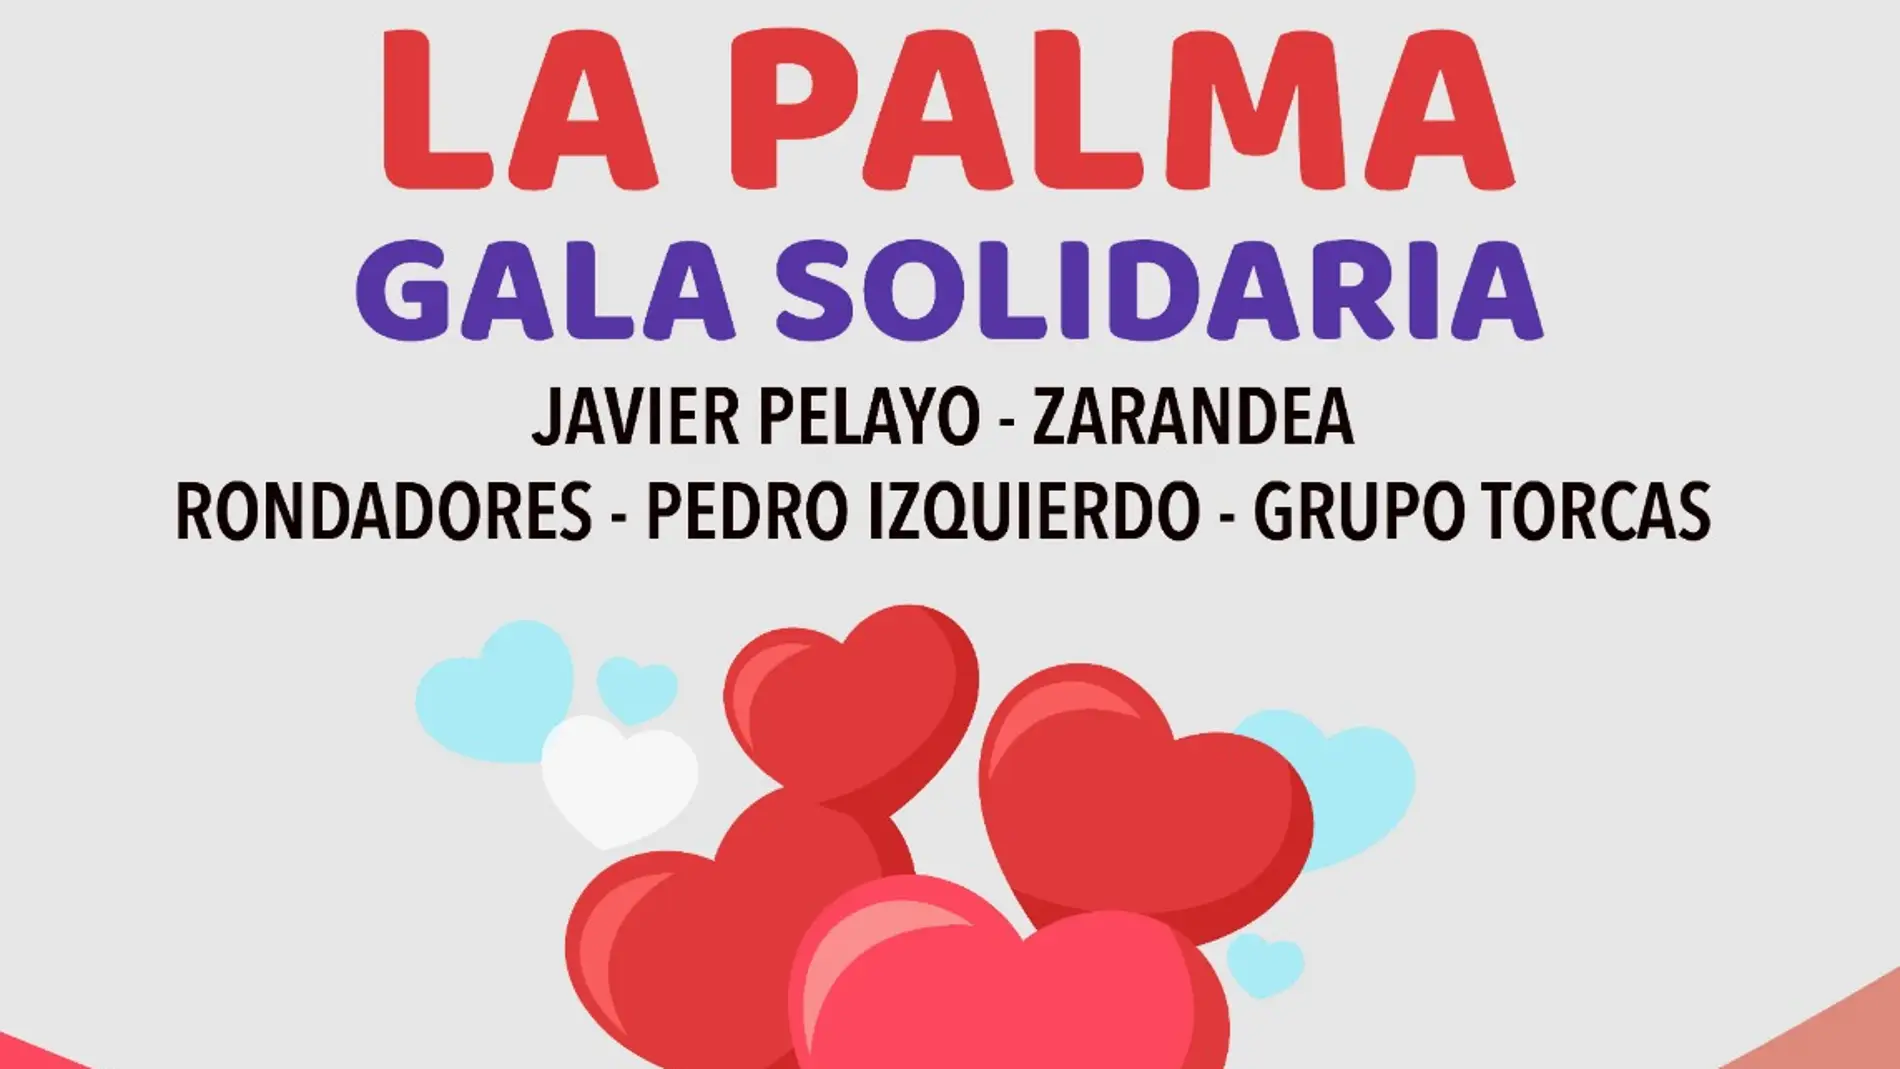 Gala solidaria por La Palma en el Auditorio de Cuenca el domingo 